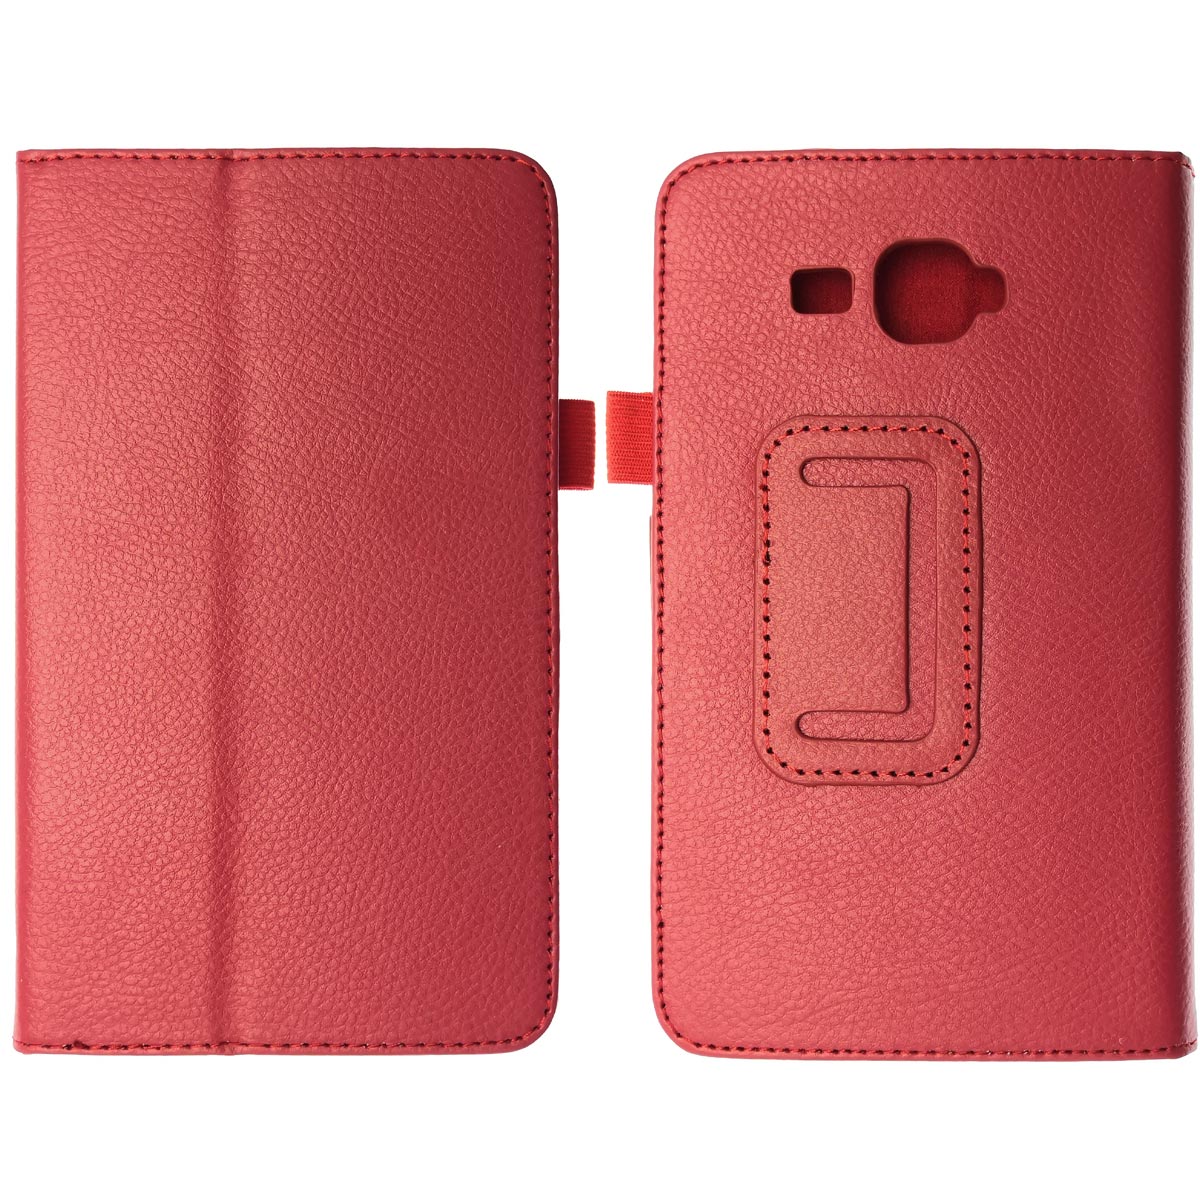 Чехол книжка для планшета SAMSUNG Galaxy Tab A 7.0 (SM-T280, SM-T285), экокожа, цвет красный